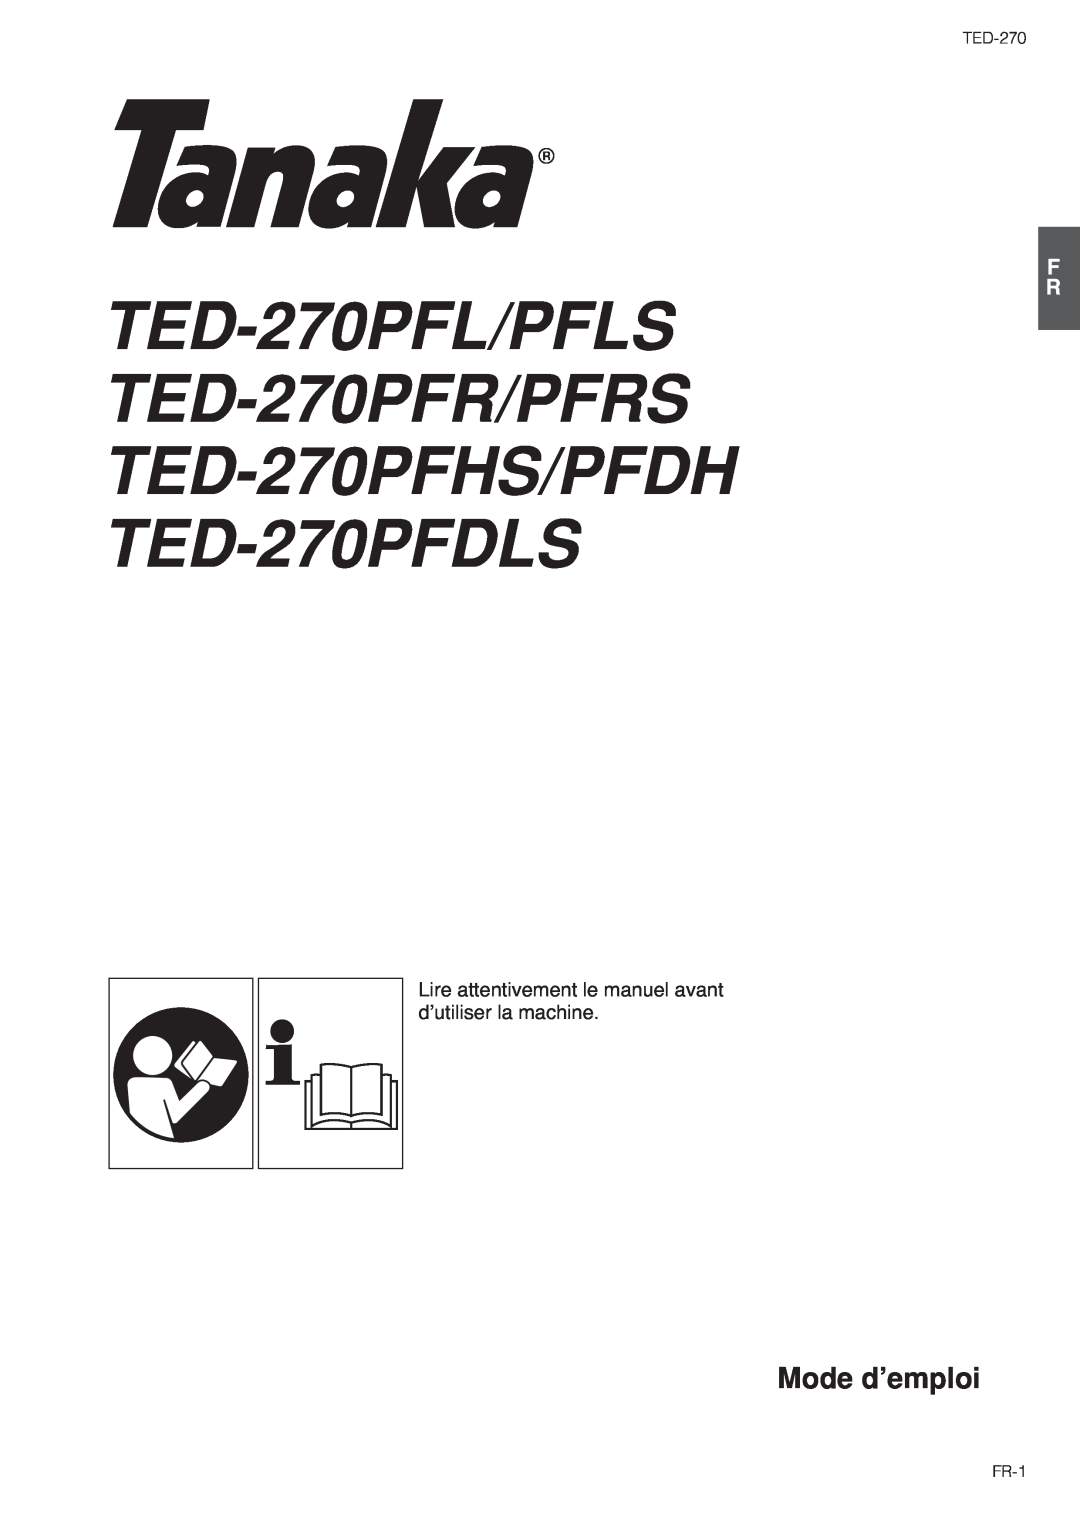 Tanaka TED-270PFDLS, TED-270PFR/PFRS Mode d’emploi, Lire attentivement le manuel avant d’utiliser la machine, FR-1 